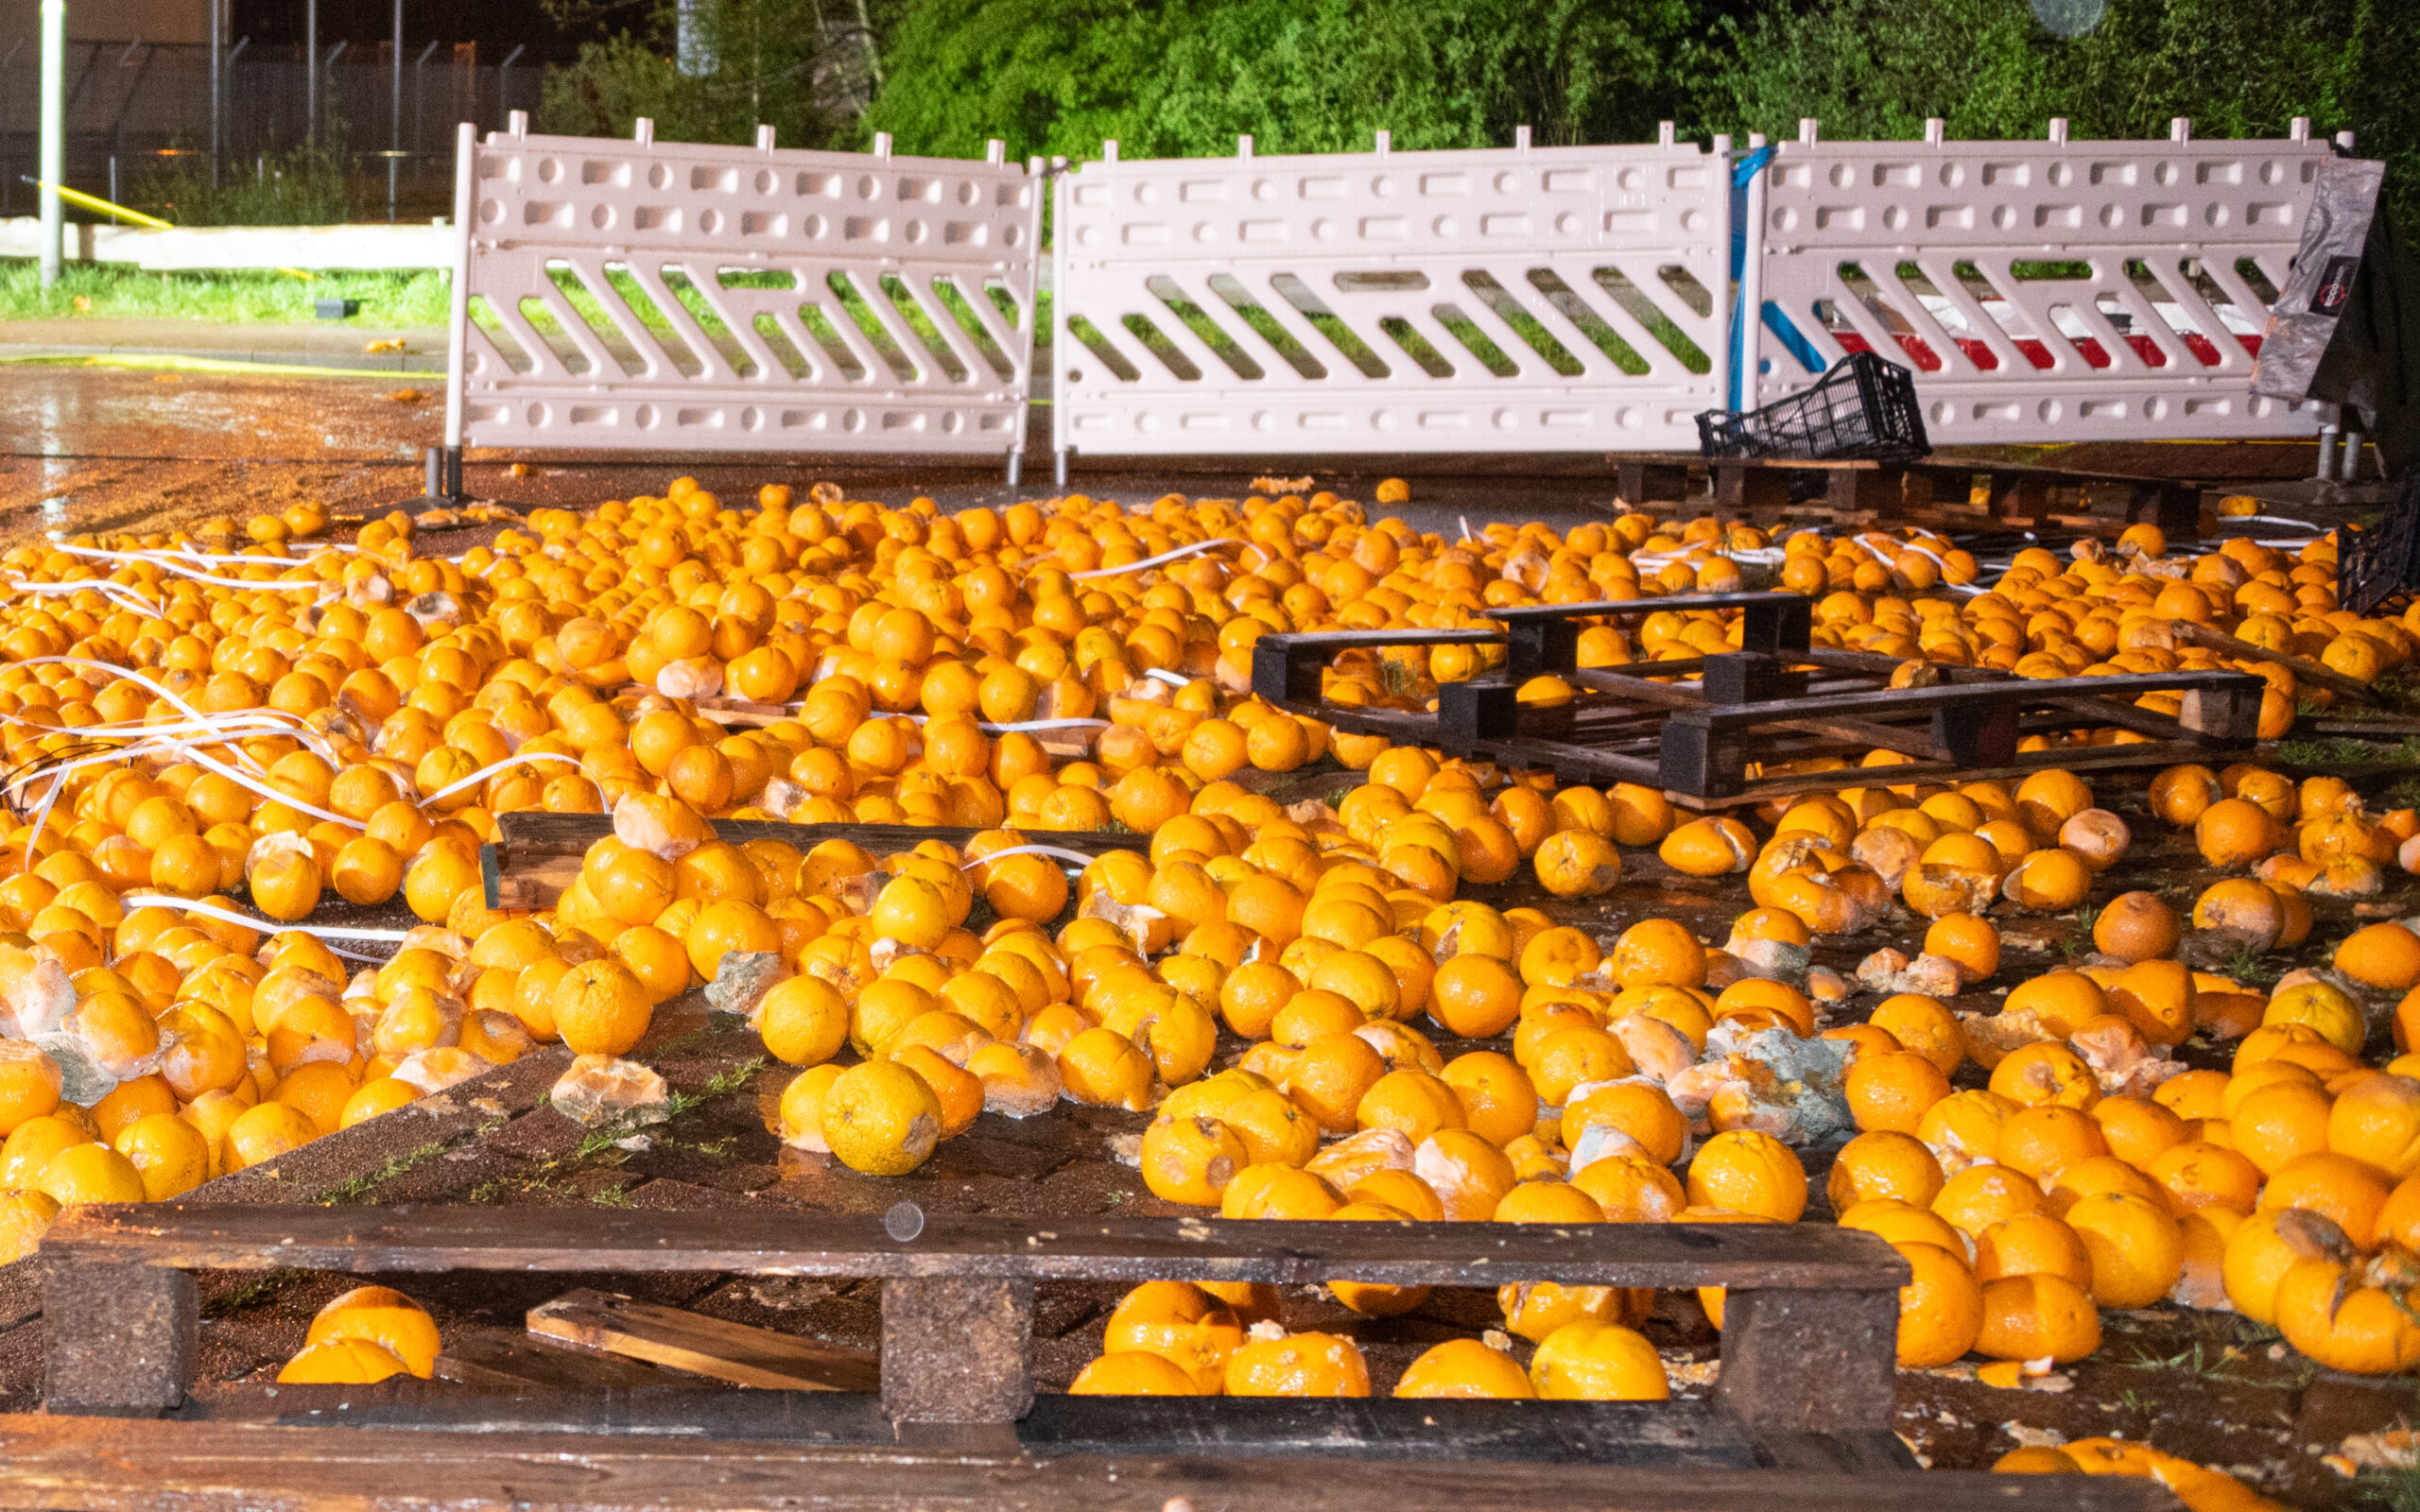 Erneut luden Unbekannte illegal mehrere Hundert Kilogramm Orangen im Landkreis Stade ab.